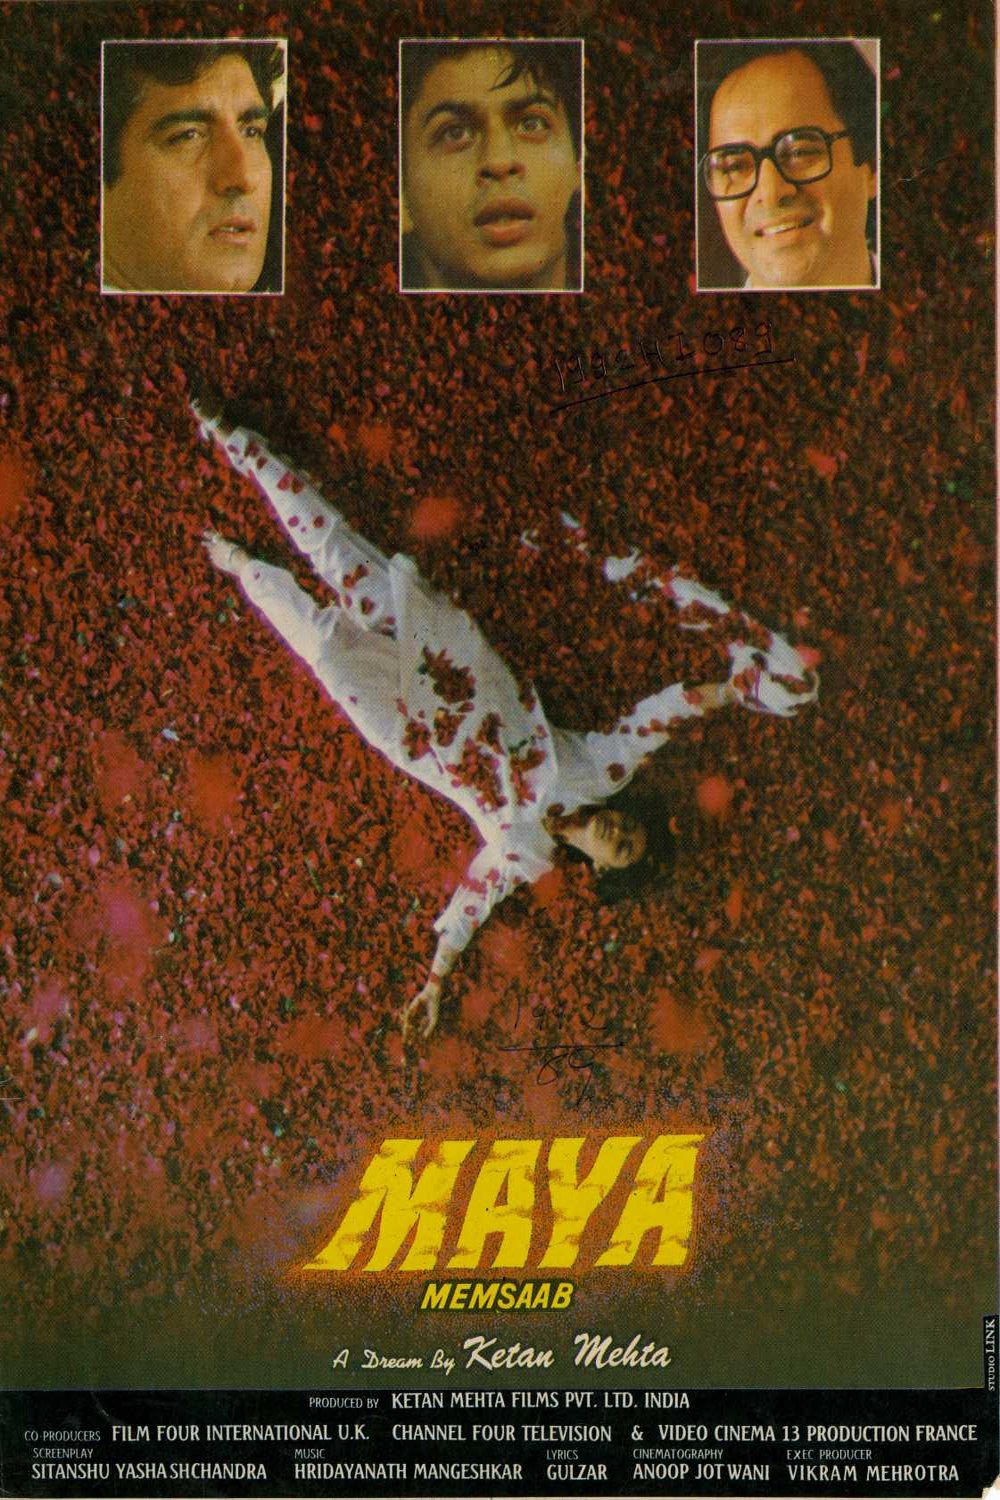 Hindi poster of the movie Maya